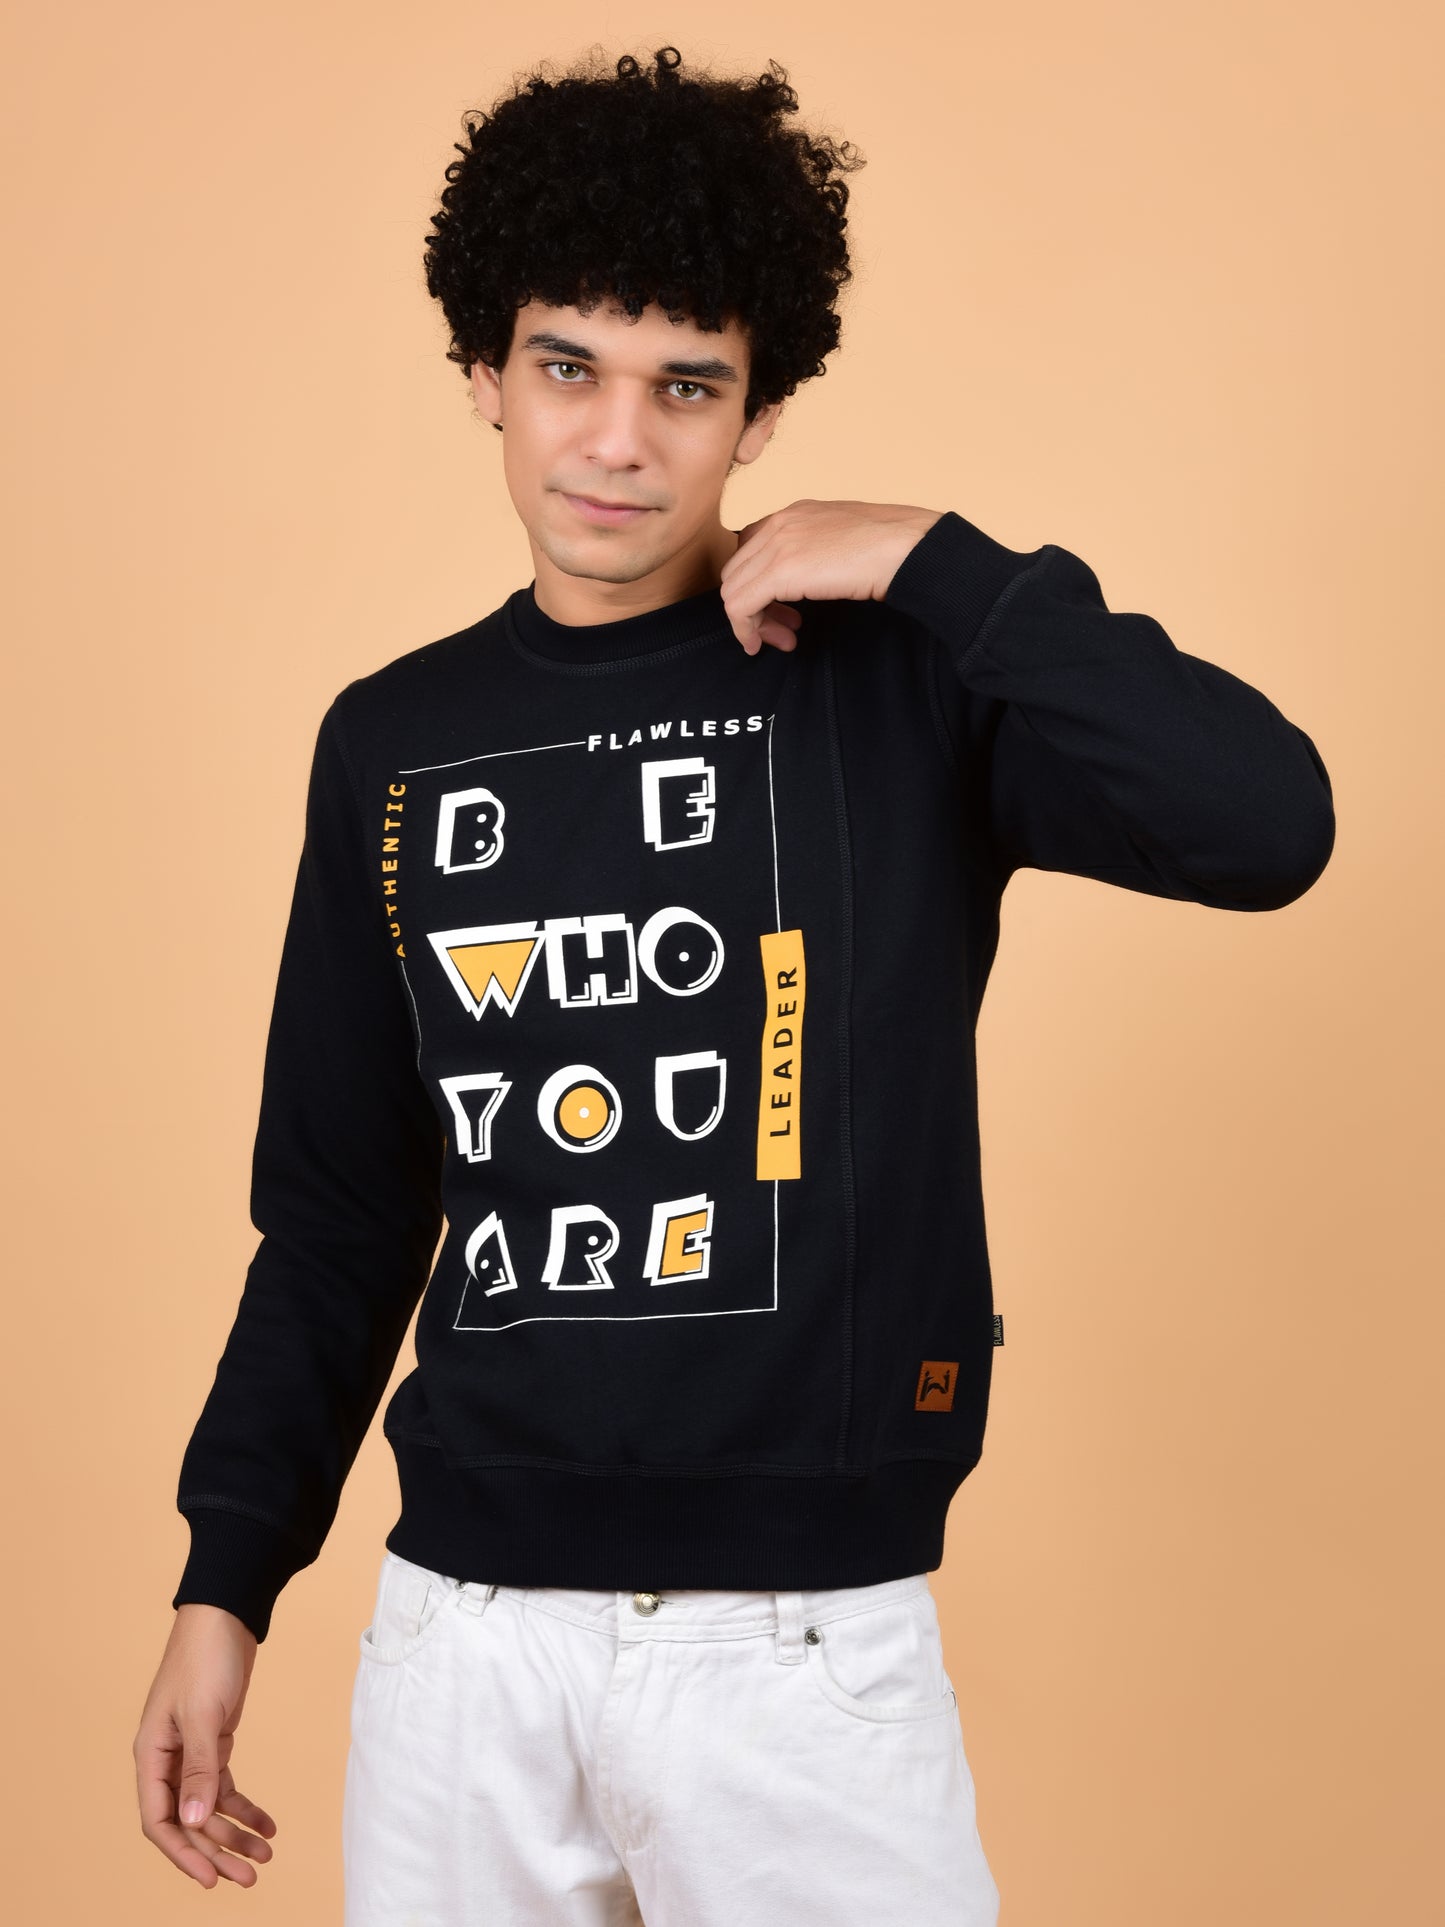 Flawless Men Typography Swag Sweatshirt Being Flawless